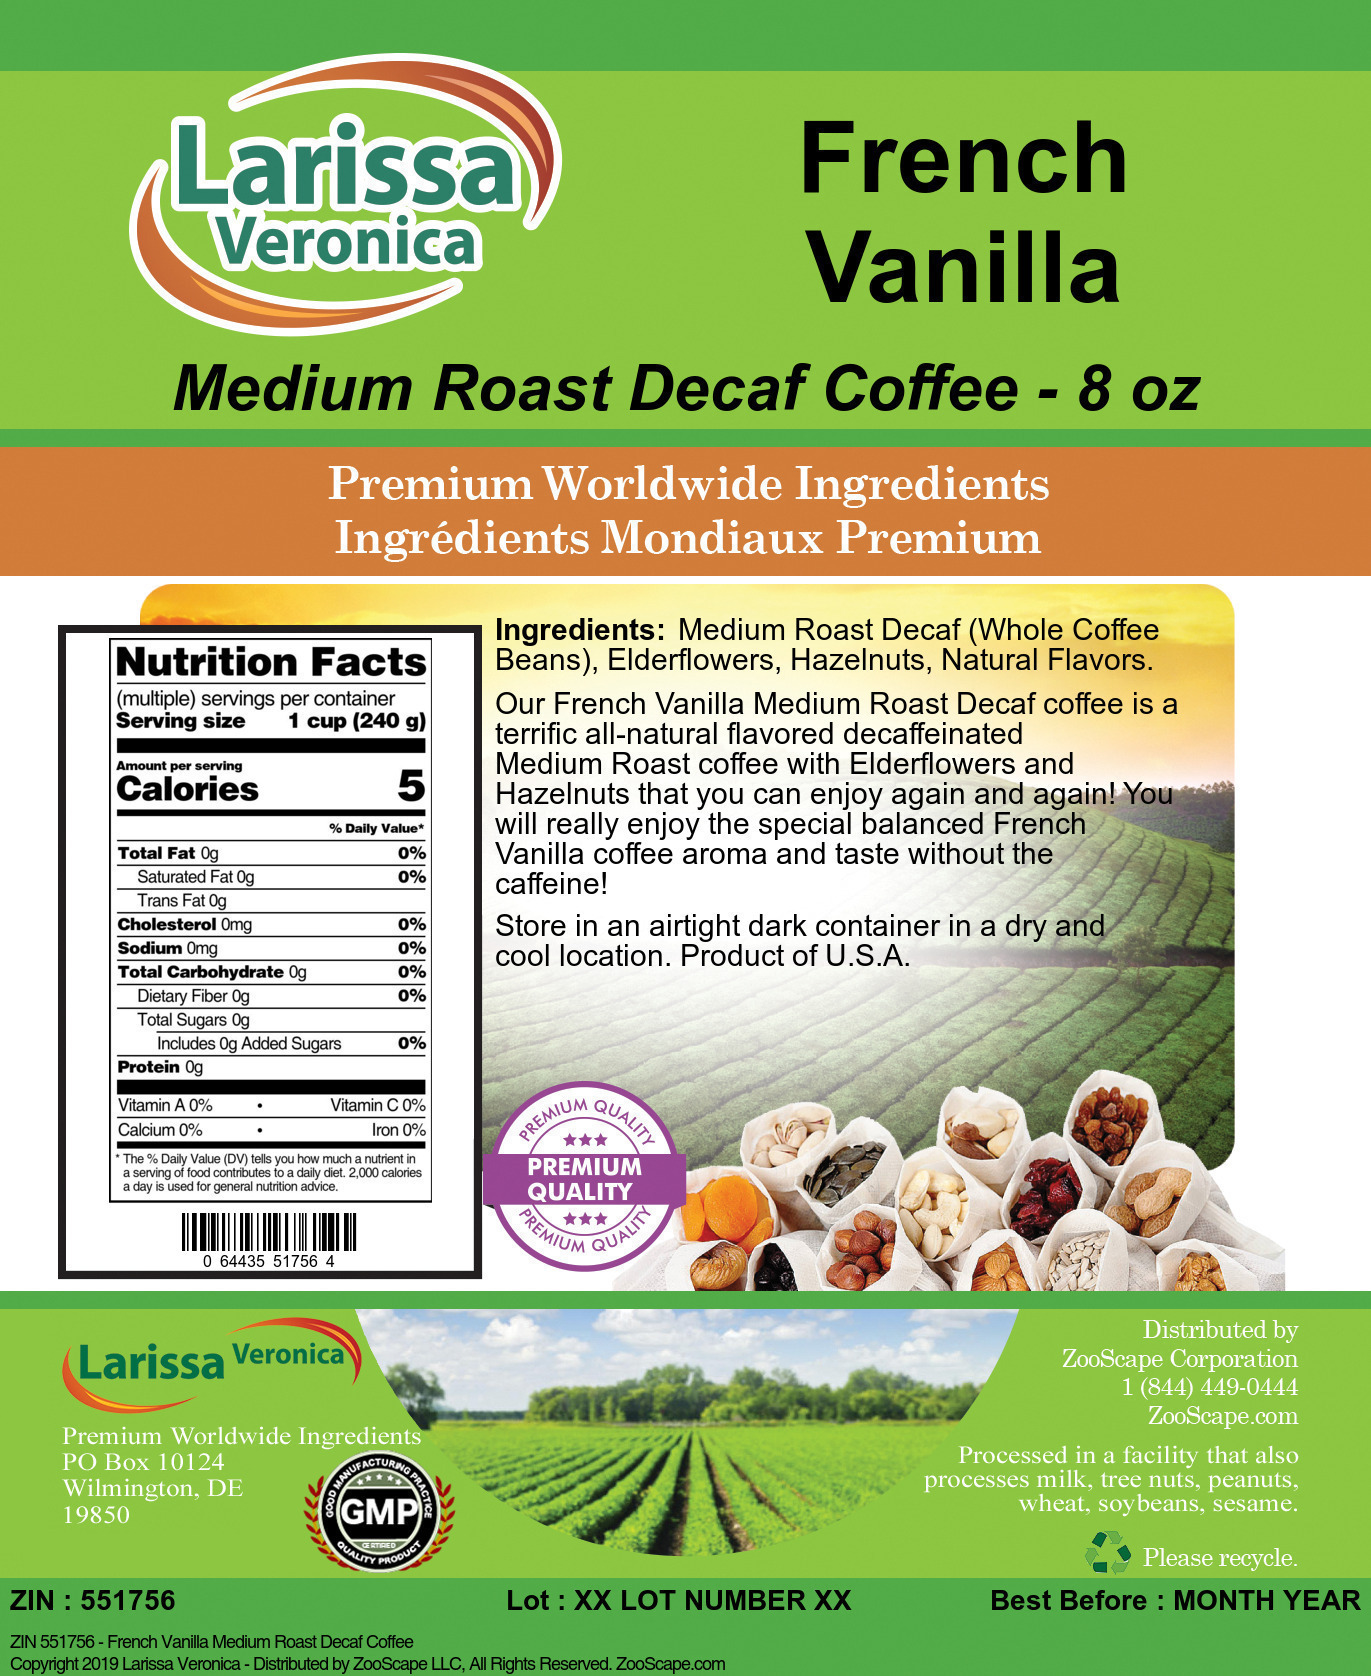 French Vanilla Medium Roast Decaf Coffee - Label